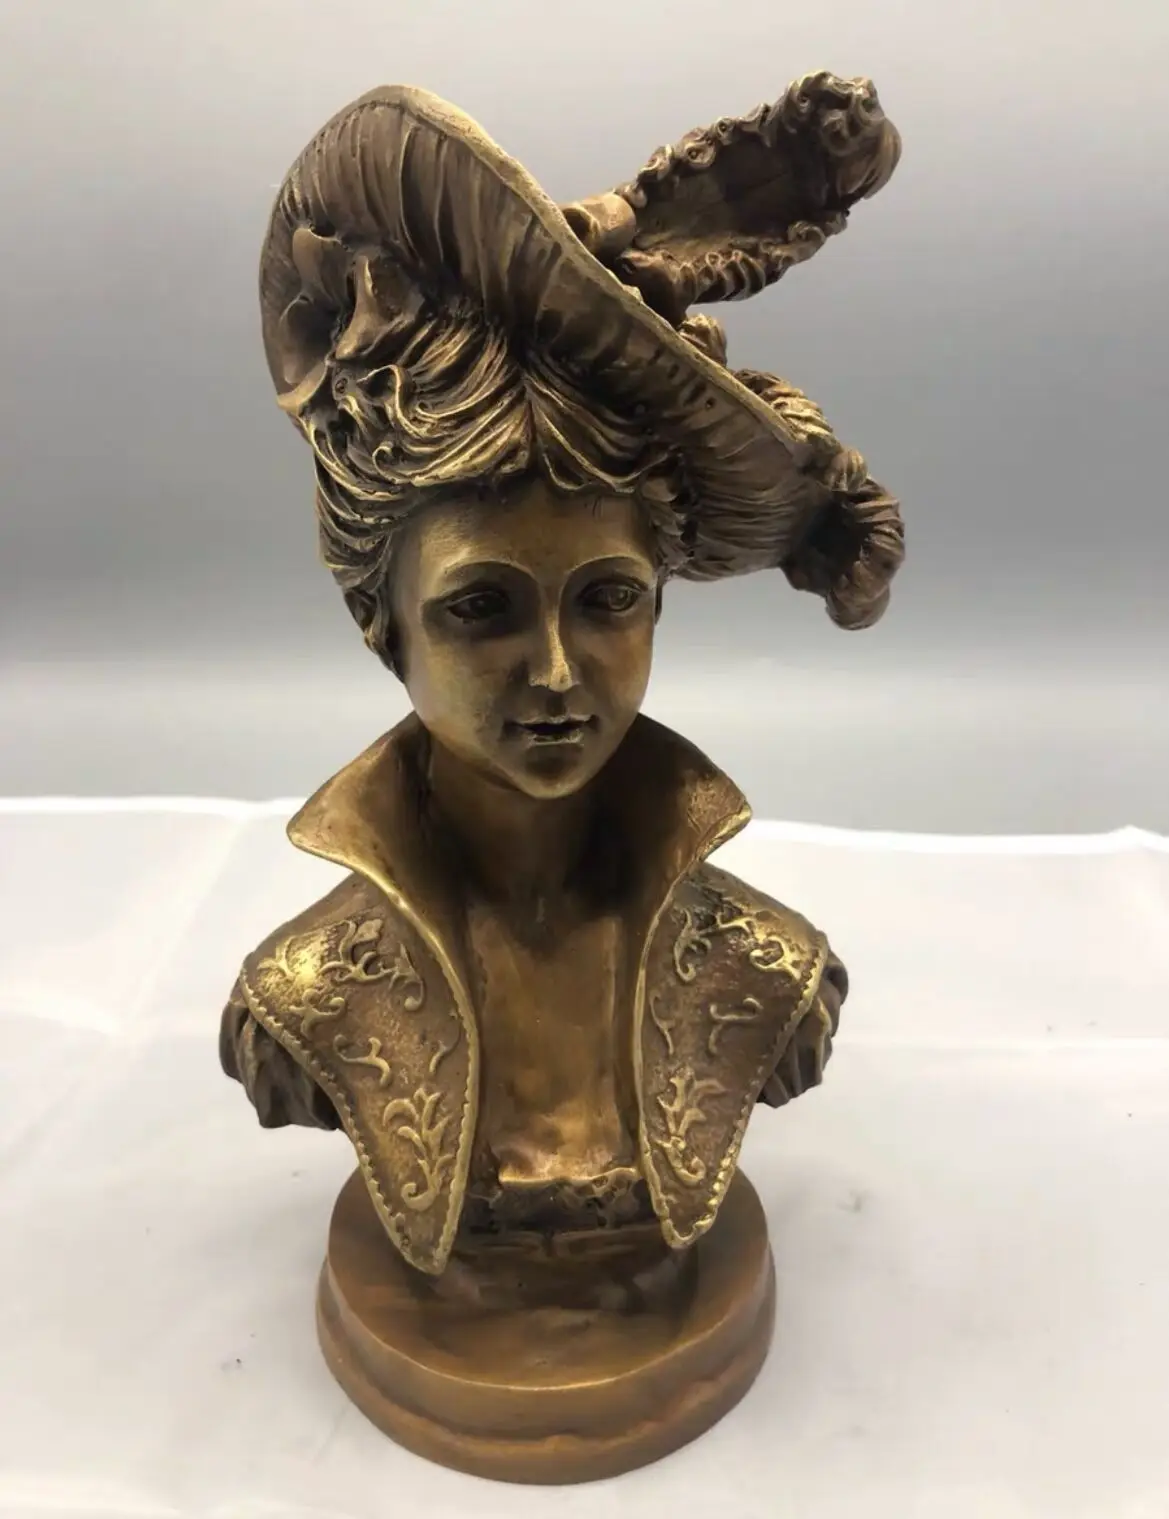 

Бронзовая статуэтка из художественной коллекции, статуэтки ручной работы, всемирно известные фигурки «Король женщины», украшения для дома, металлические поделки